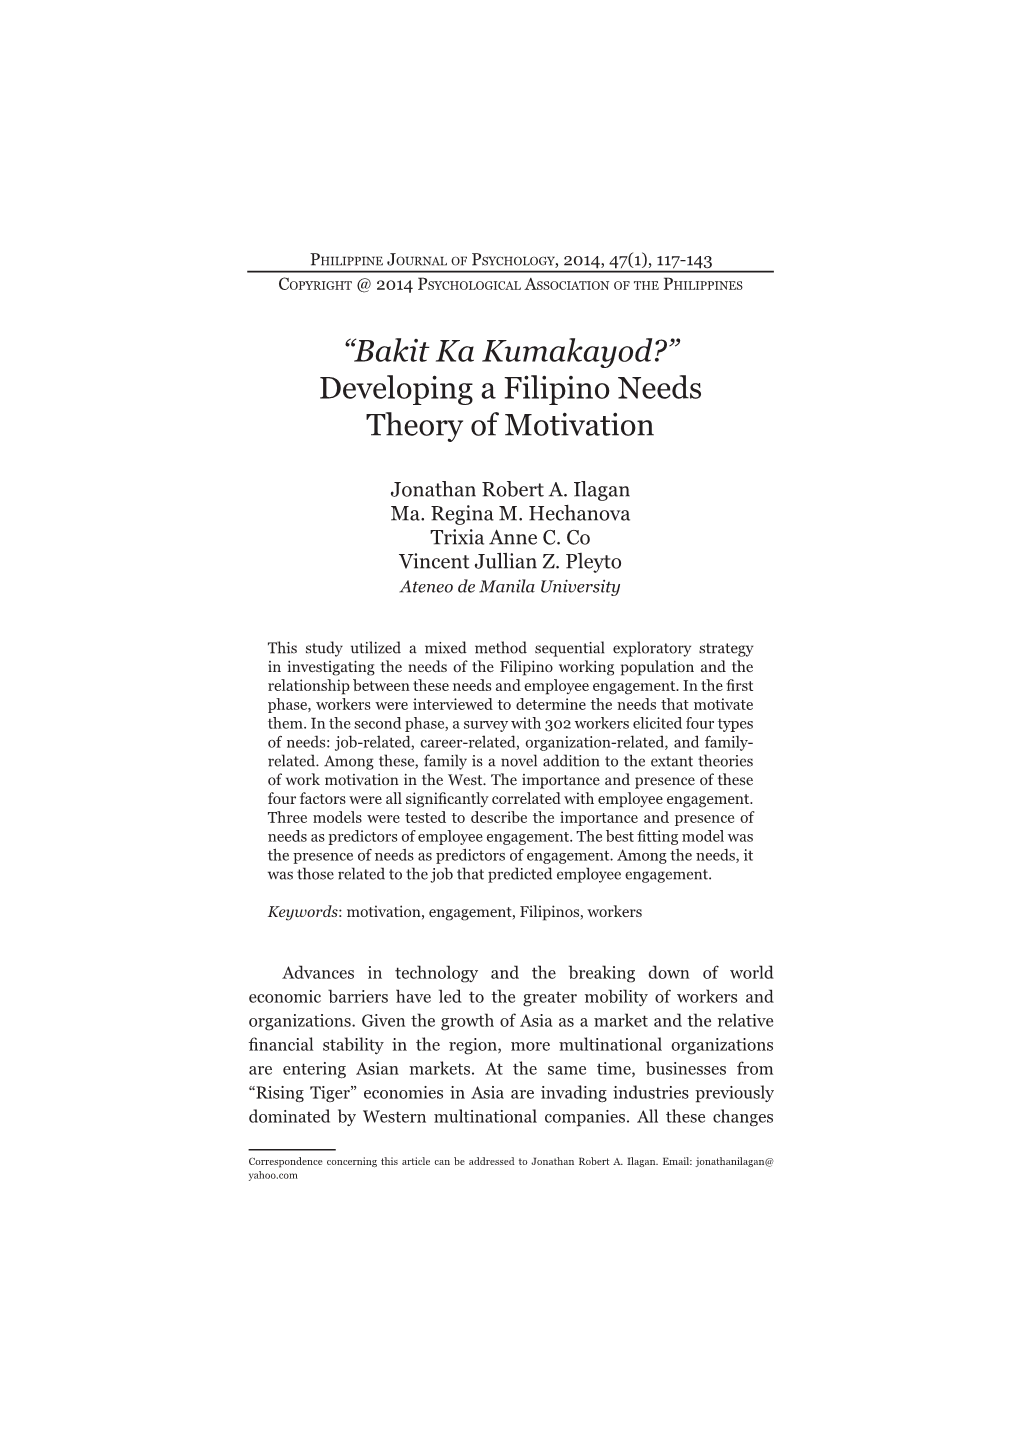 “Bakit Ka Kumakayod?” Developing a Filipino Needs Theory of Motivation